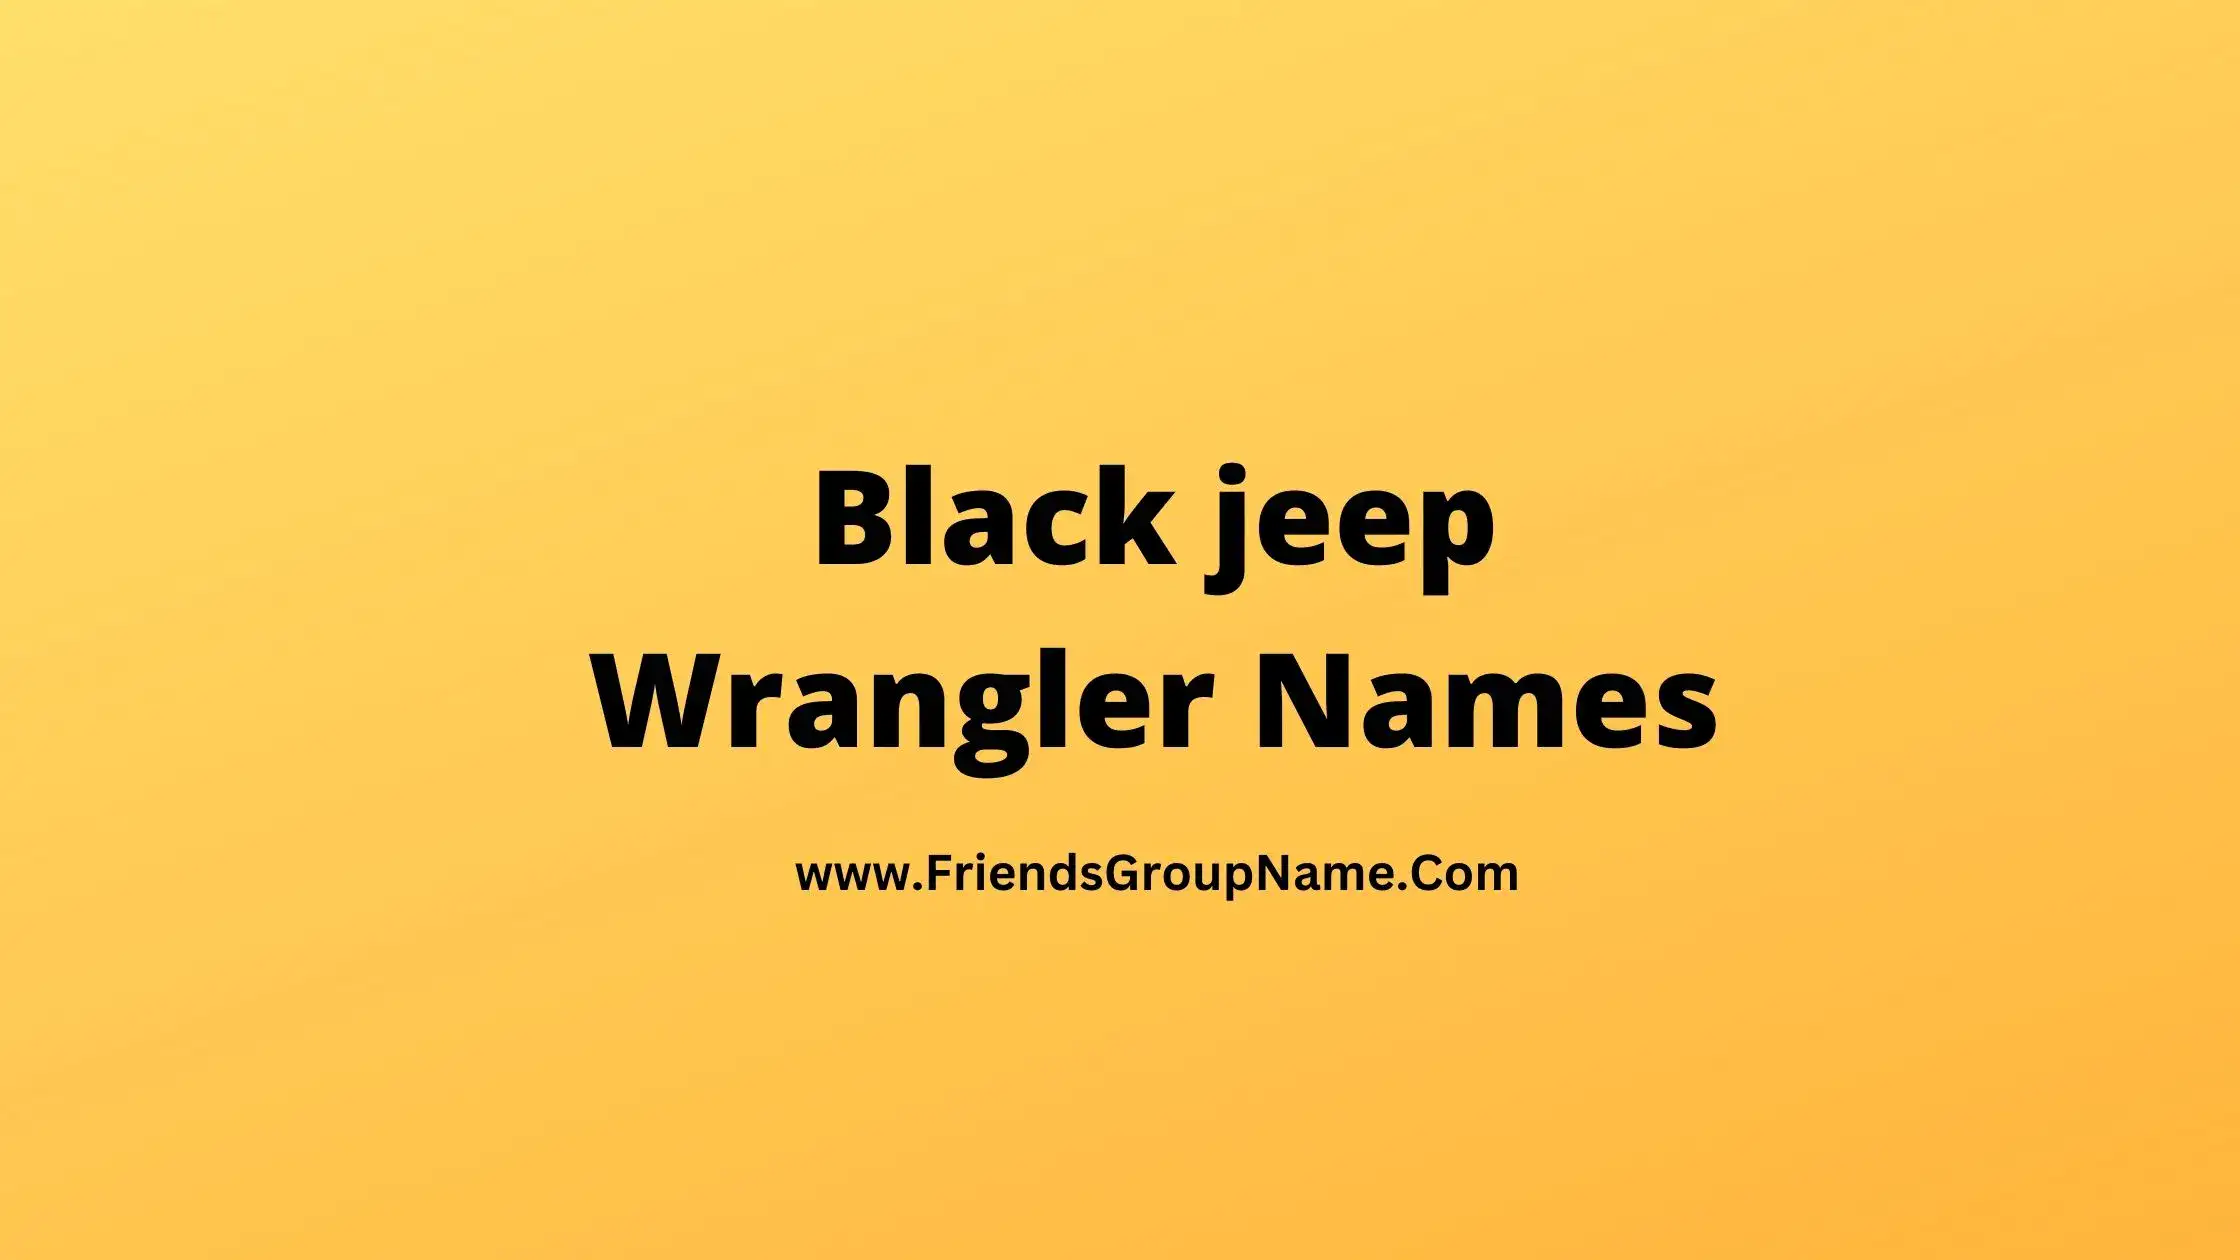 Black jeep Wrangler Names